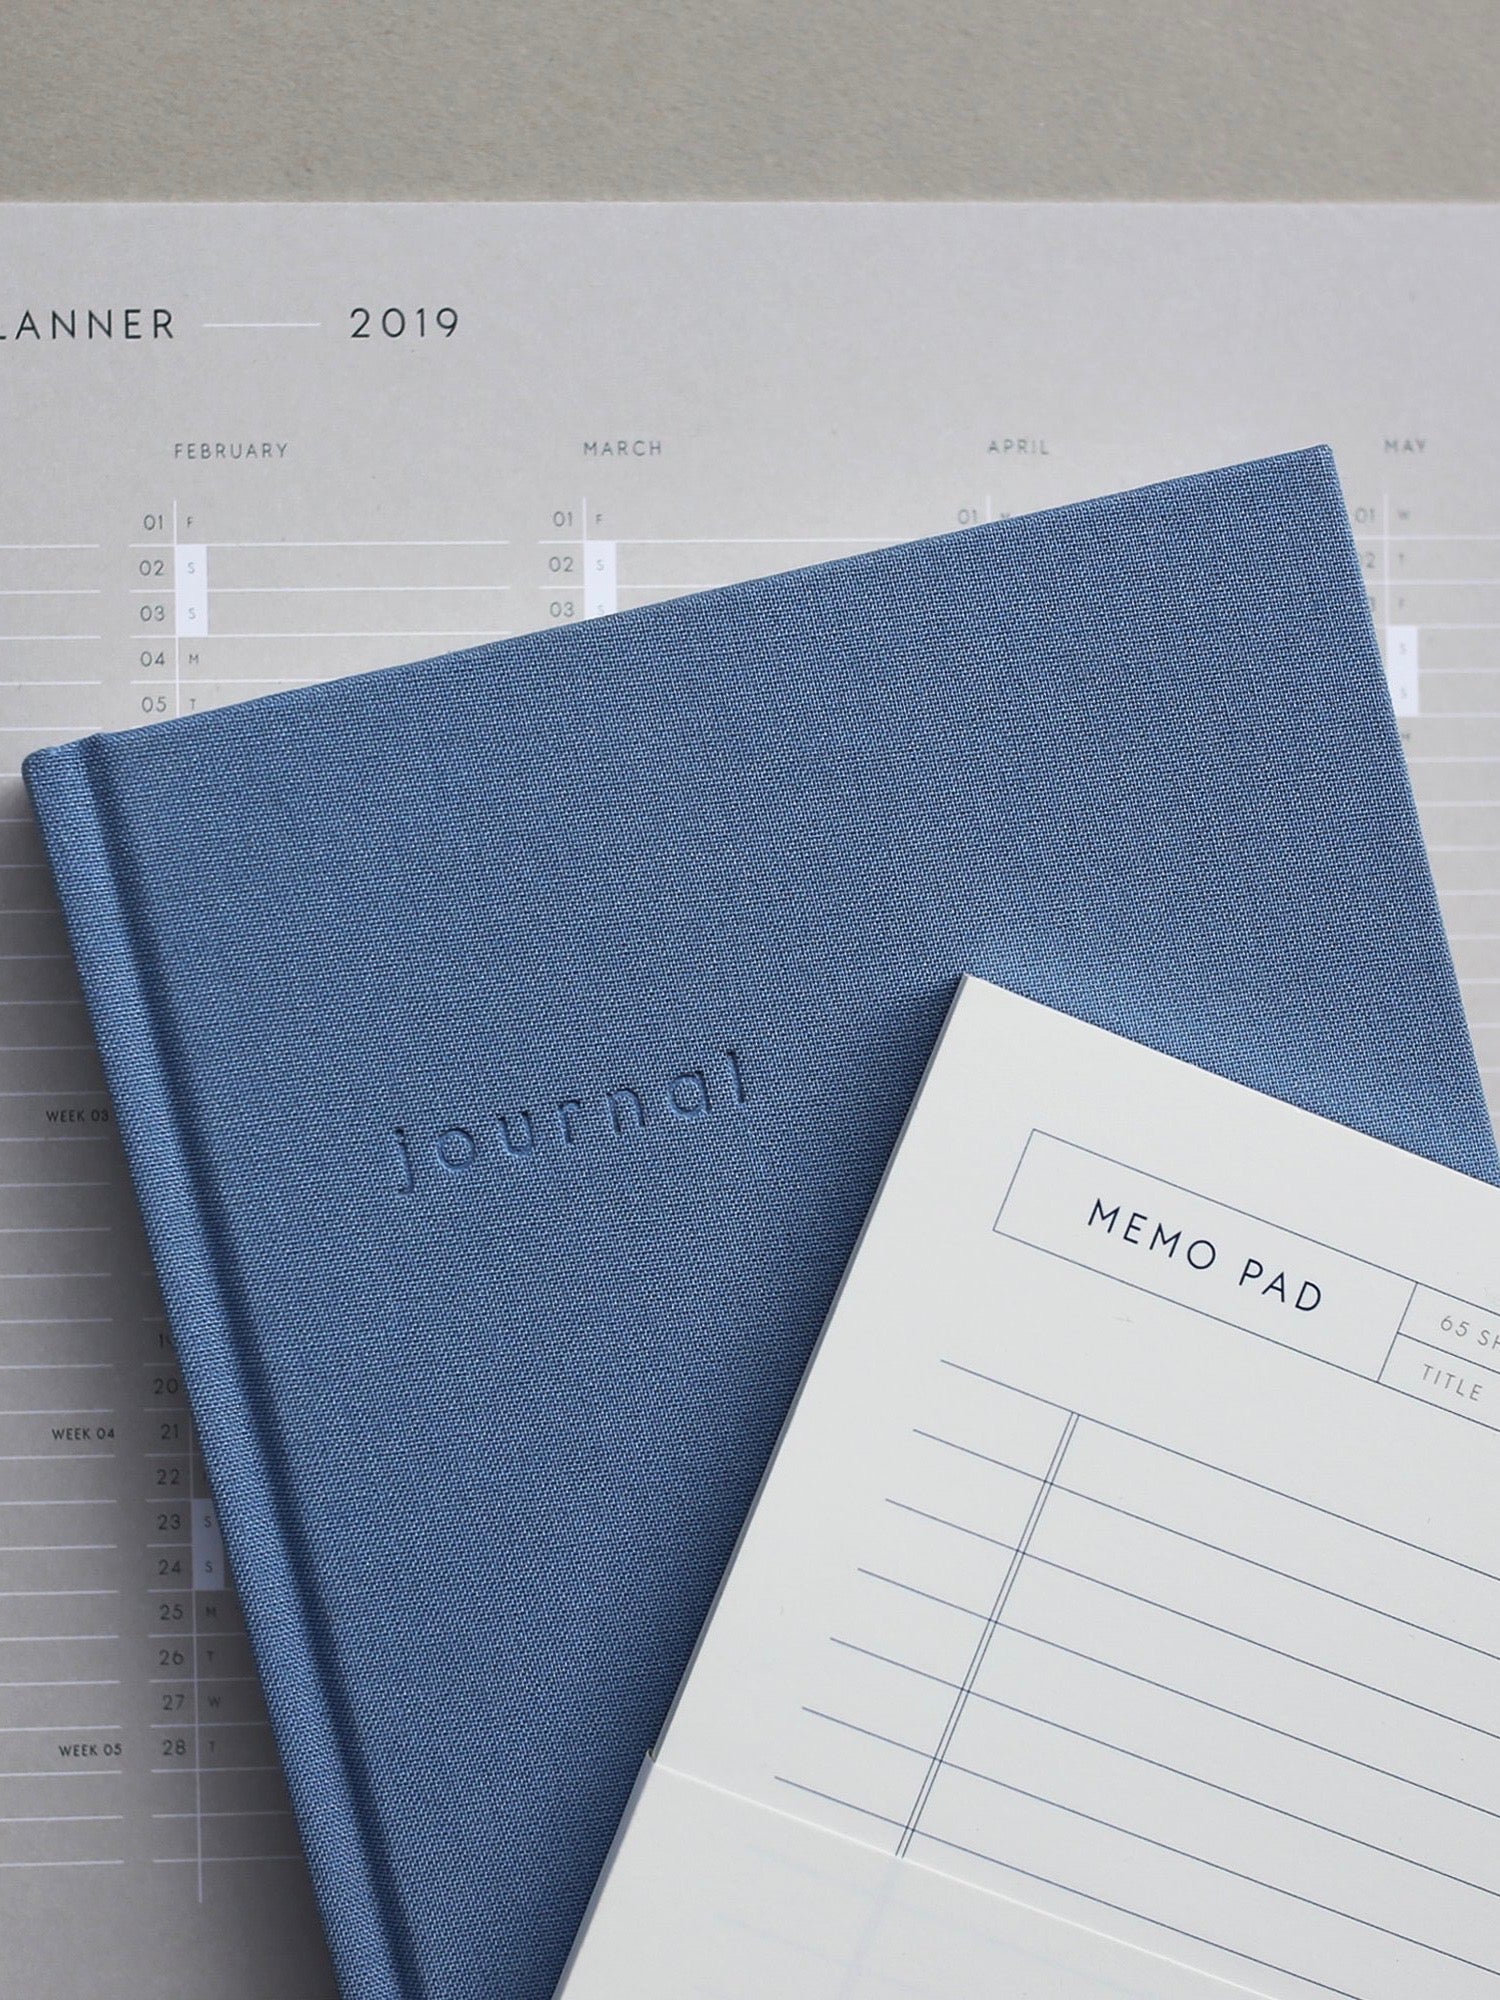 Blue Hardcover Journal